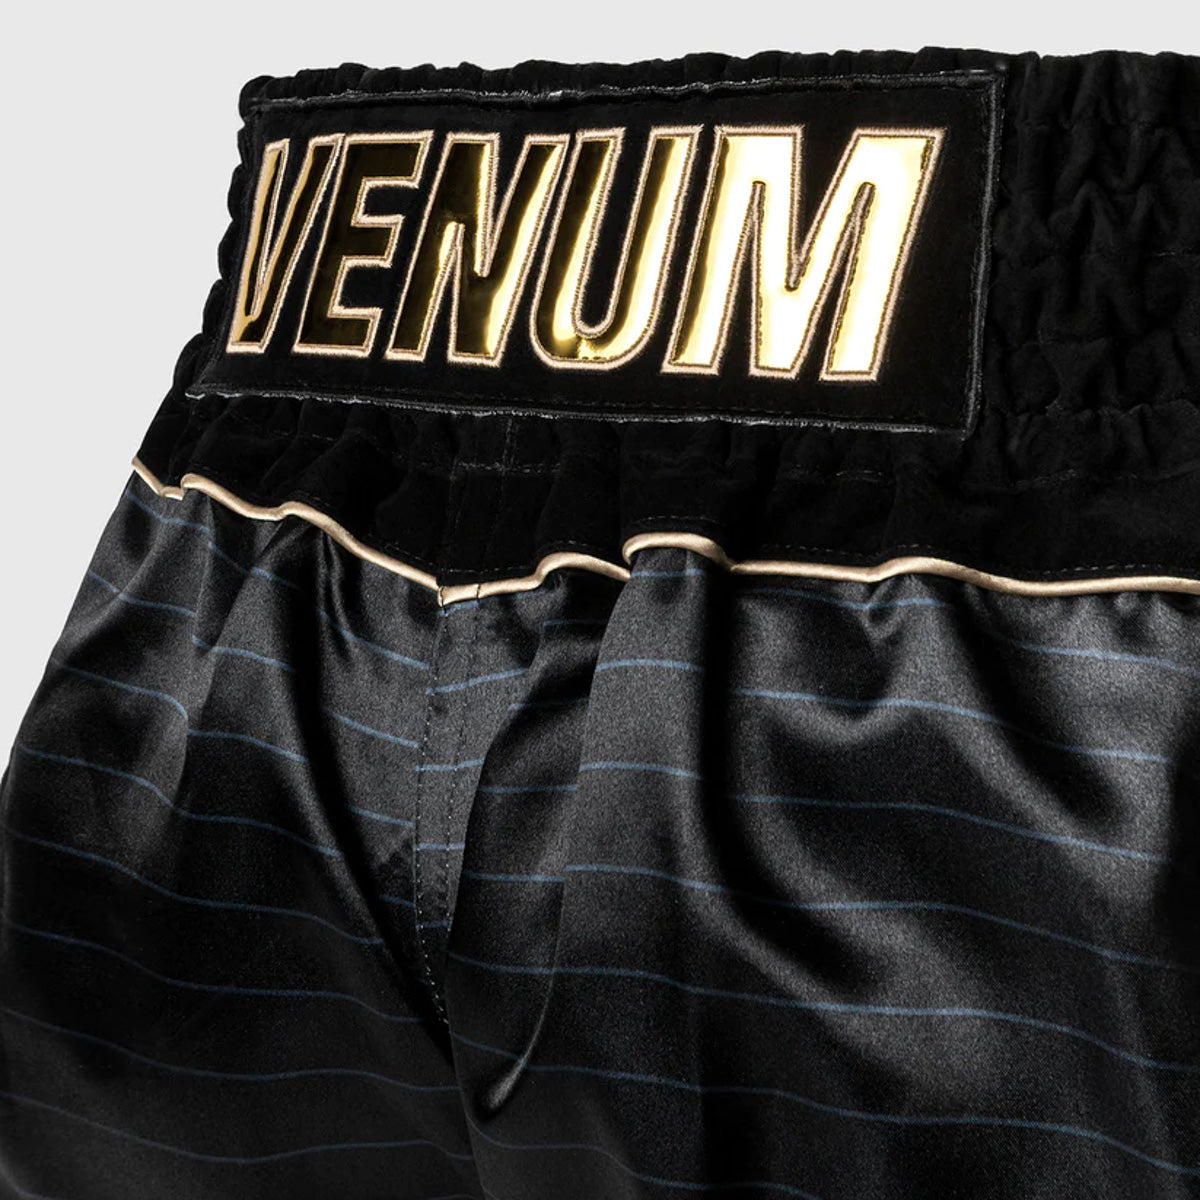 Kick-thai shorts Venum Attack